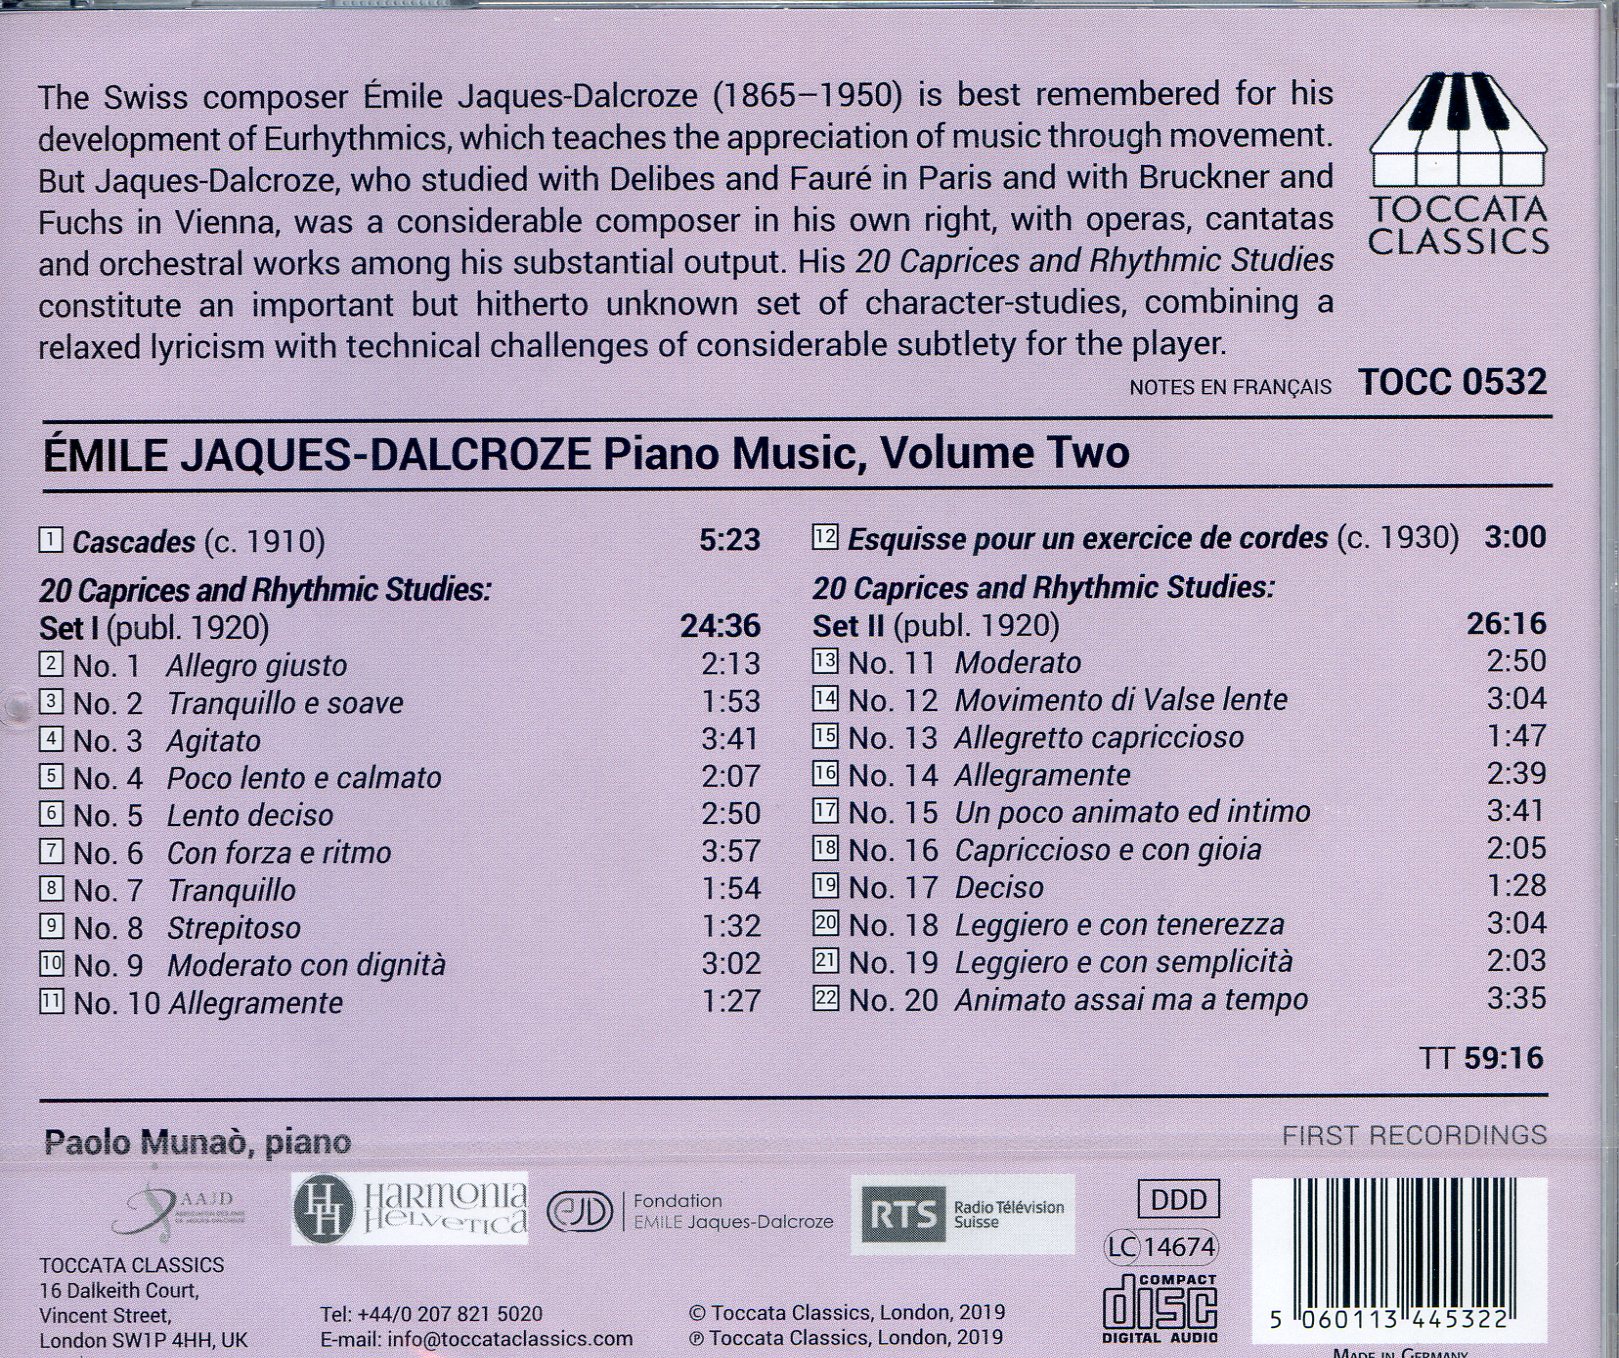 Paolo Munao 에밀 자크-달크로즈: 20개의 광시곡과 리듬 연습곡, 케스케이드, 스케치 (Emile Jaques-Dalcroze: Piano Music, Volume Two)